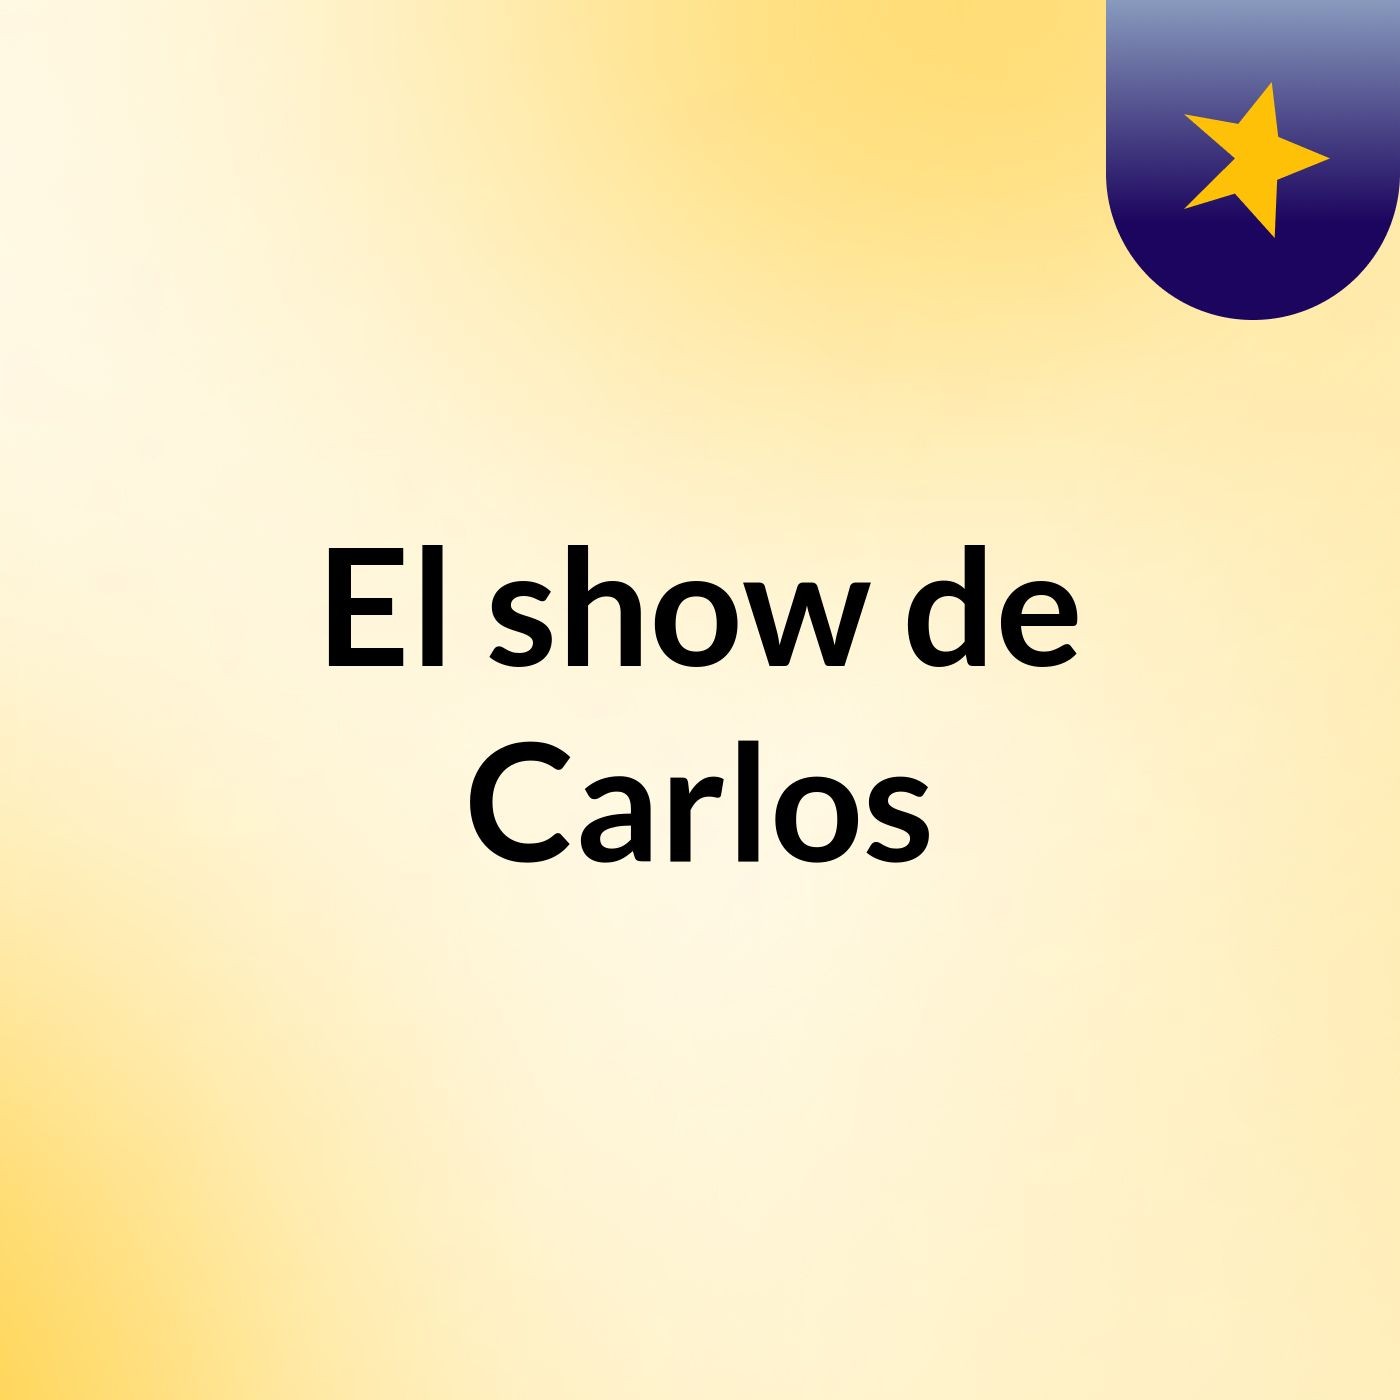 El show de Carlos